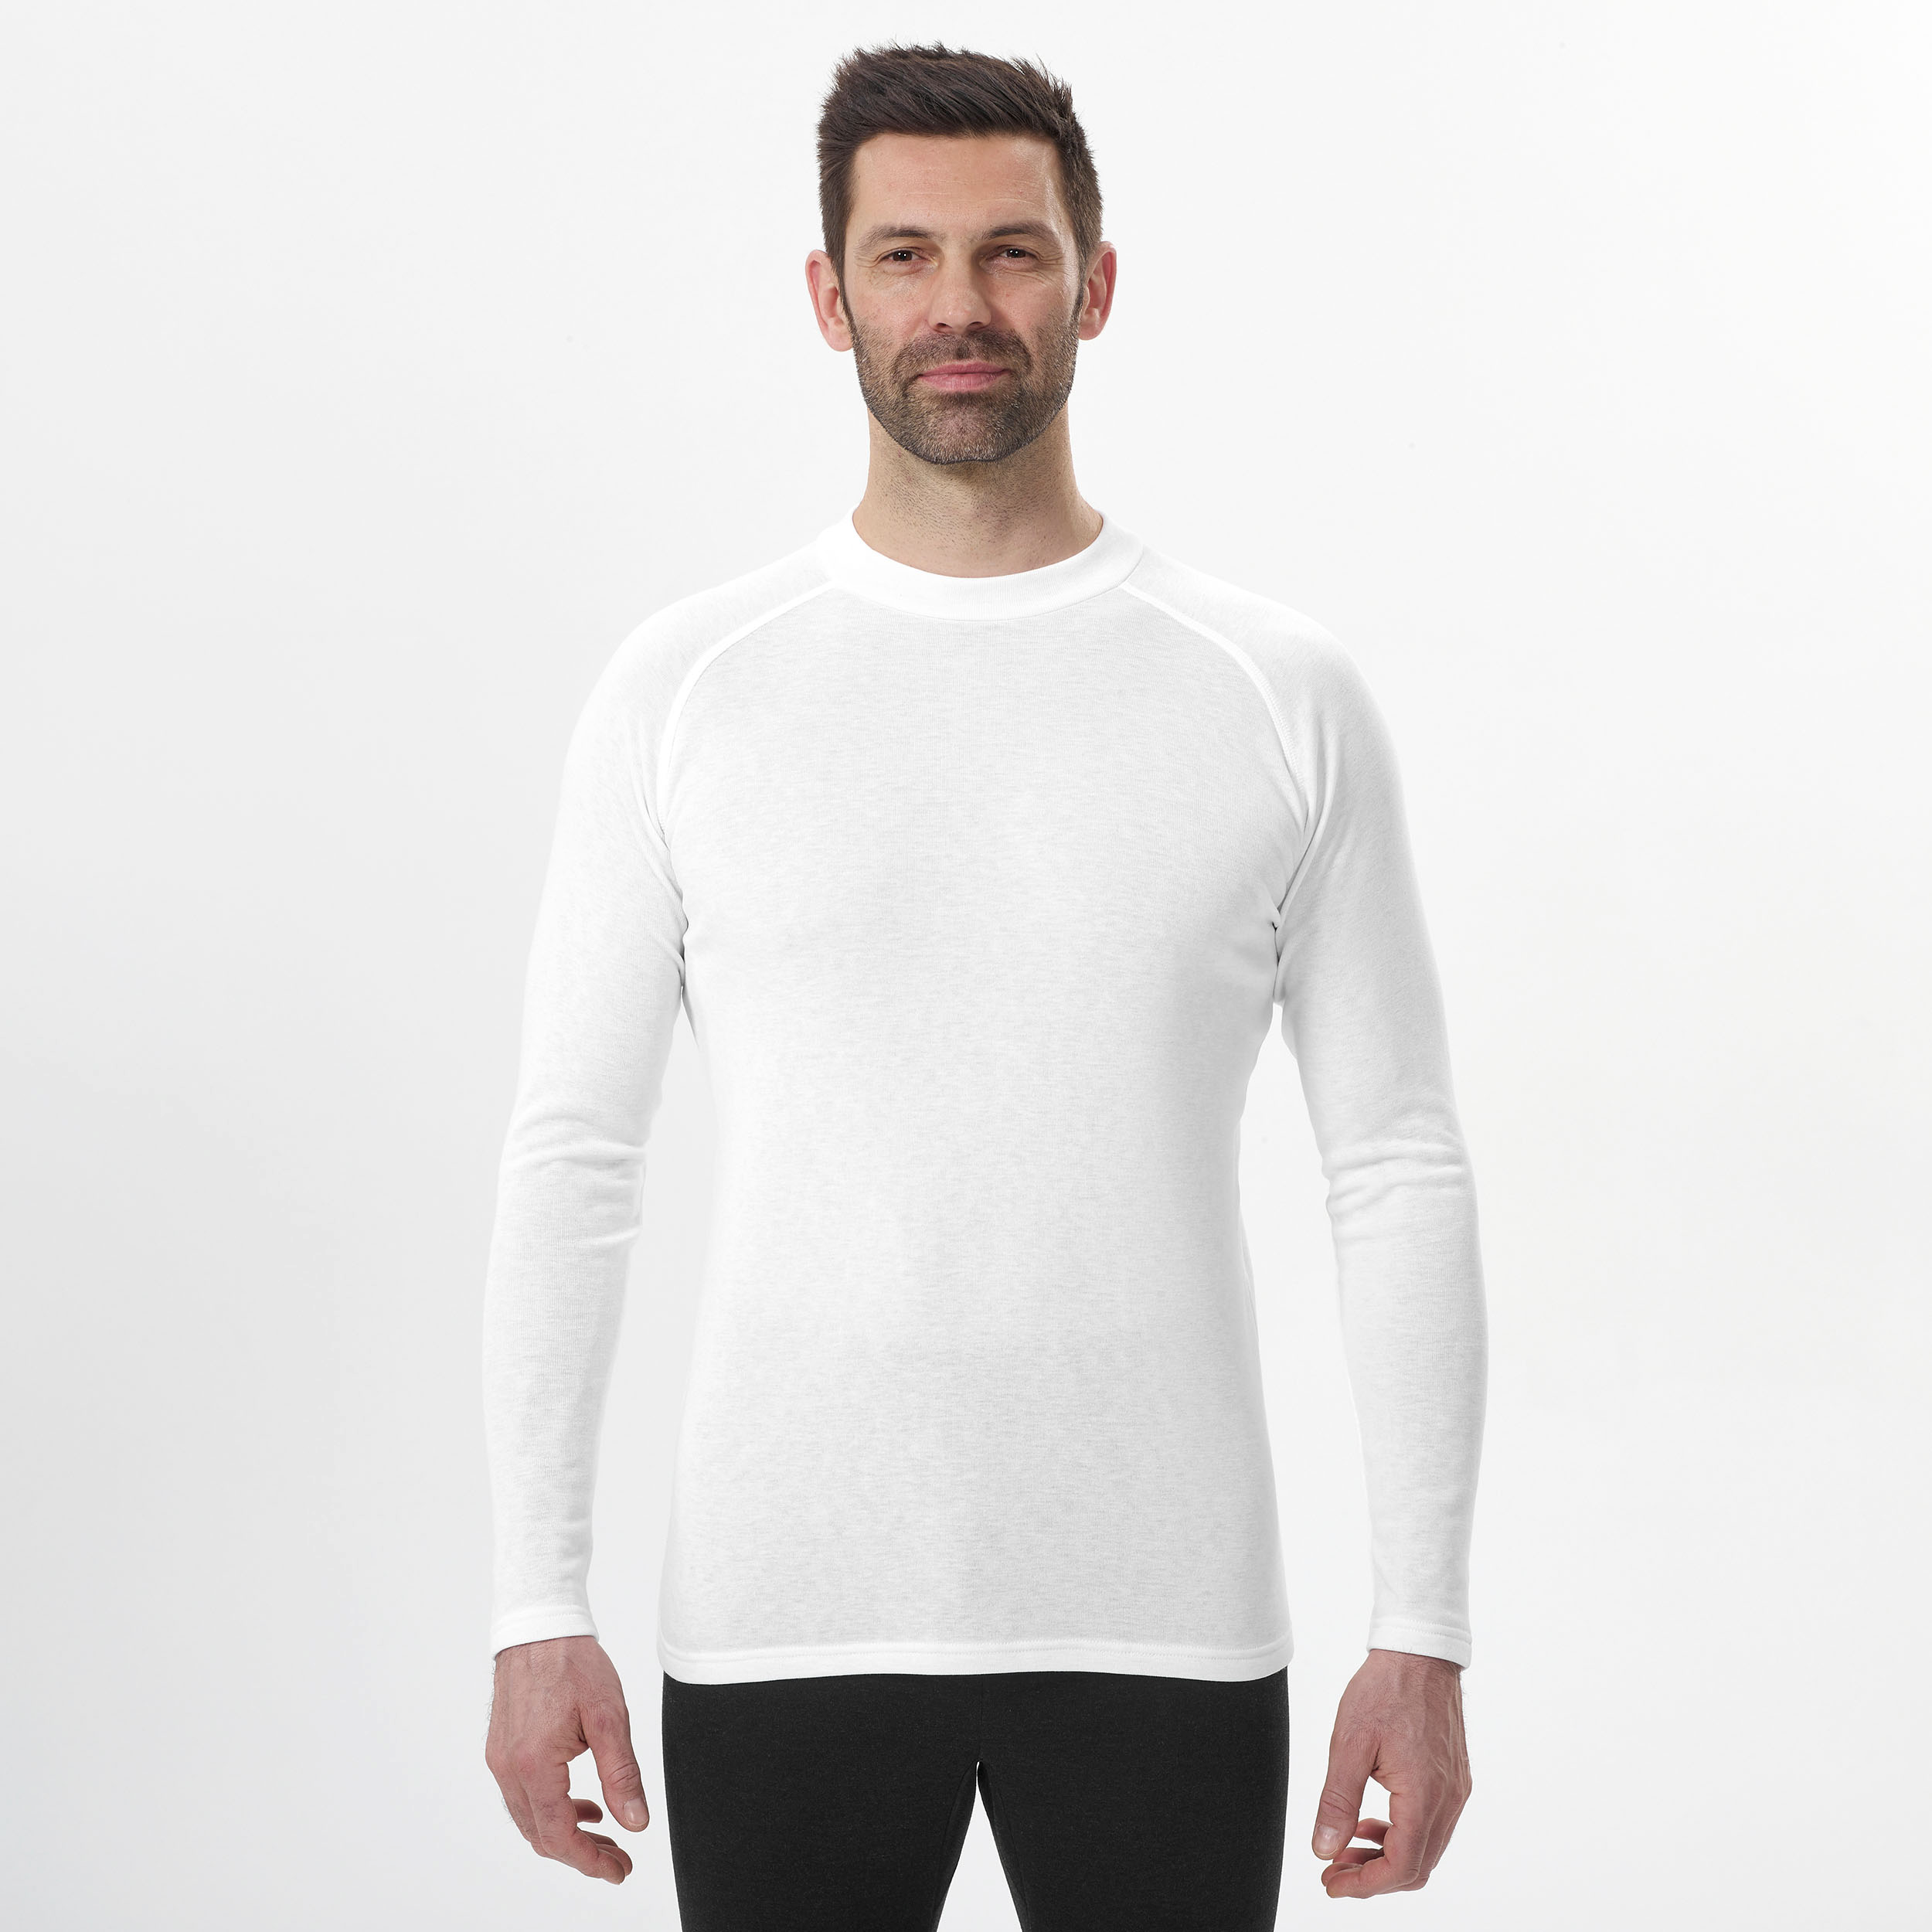 Sous-vêtement de ski homme - BL 100 haut - Blanc greige pour les clubs et  collectivités